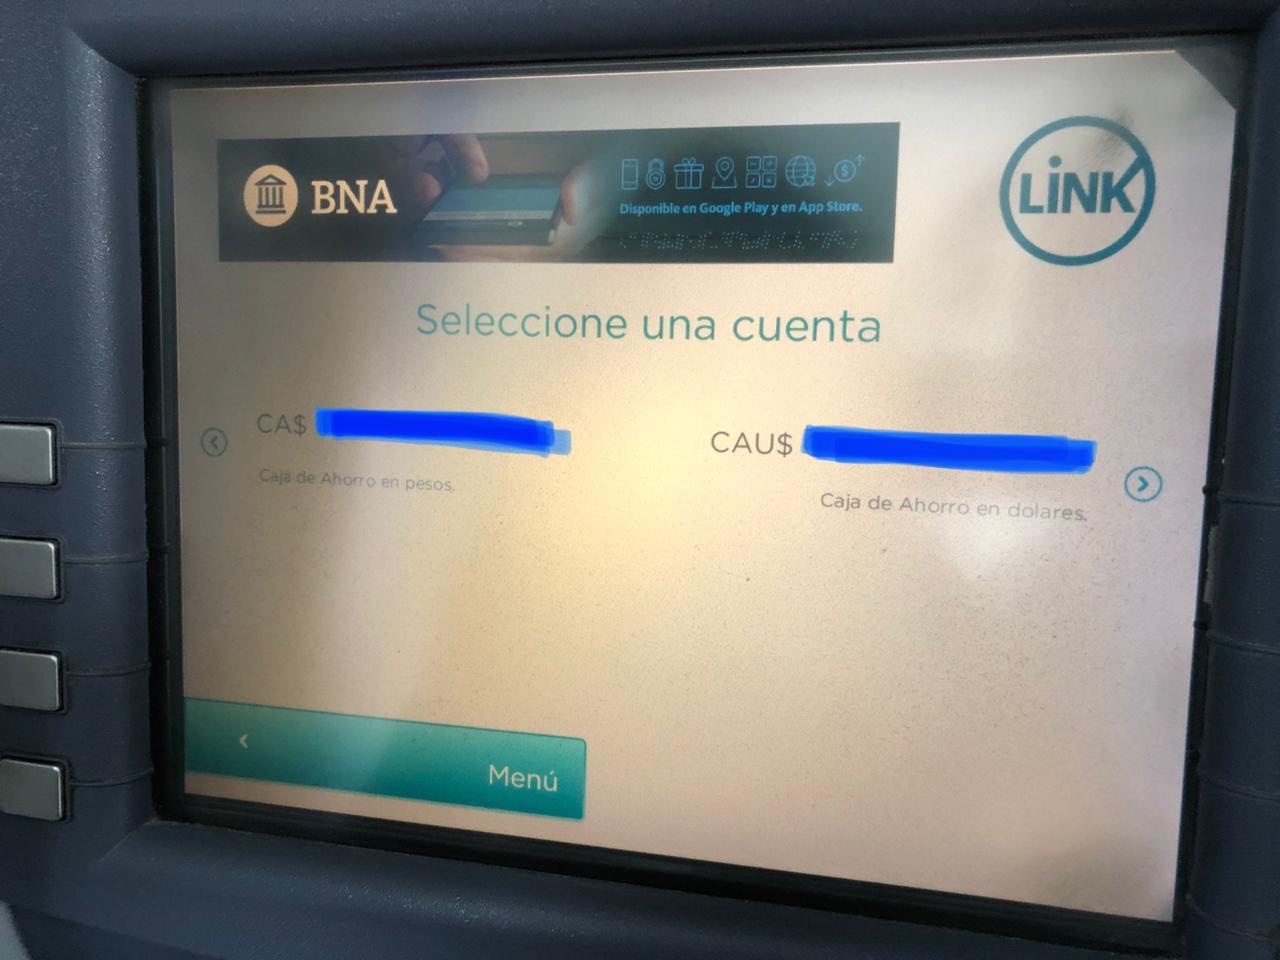 Pantalla de cajero automático de Banco Nación con cuentas en pesos y dólares